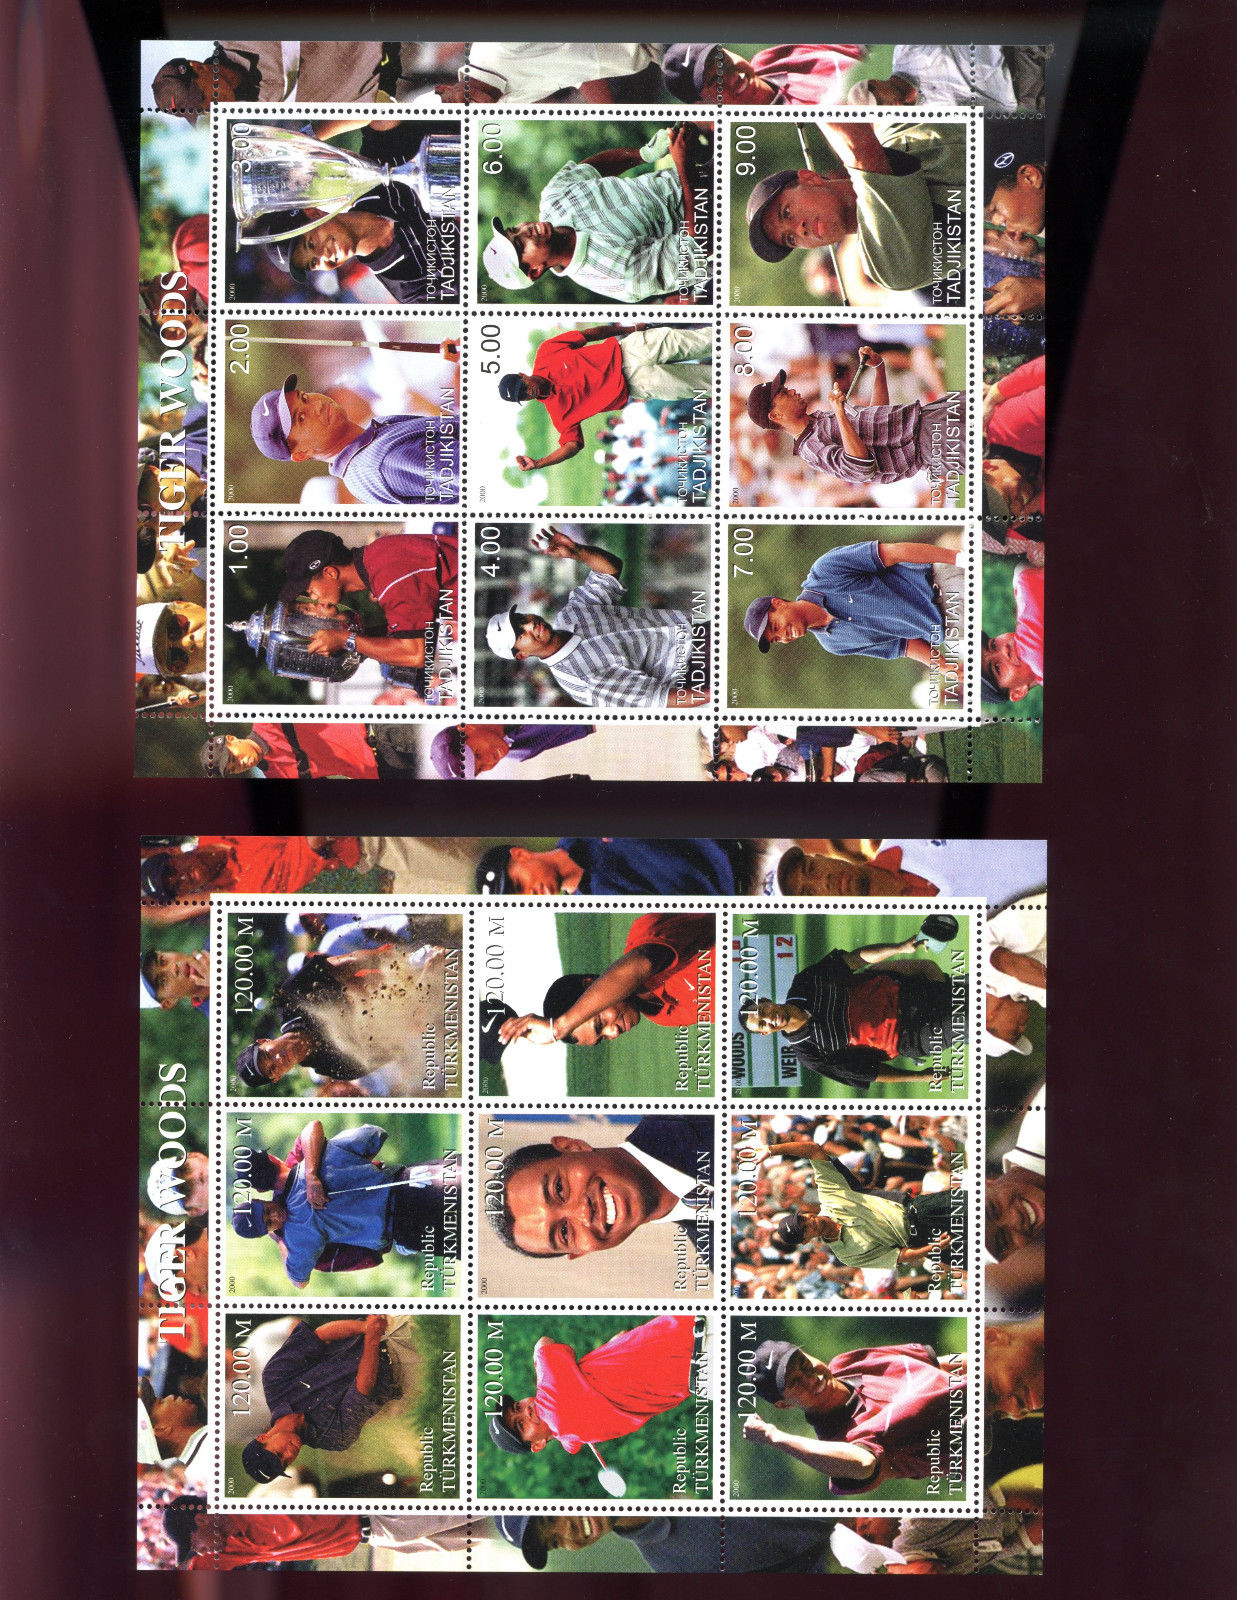 2 2000 Tiger Woods Tadjikistan AND Turkmenistan Golf Uncut Postage Stamp Sheet